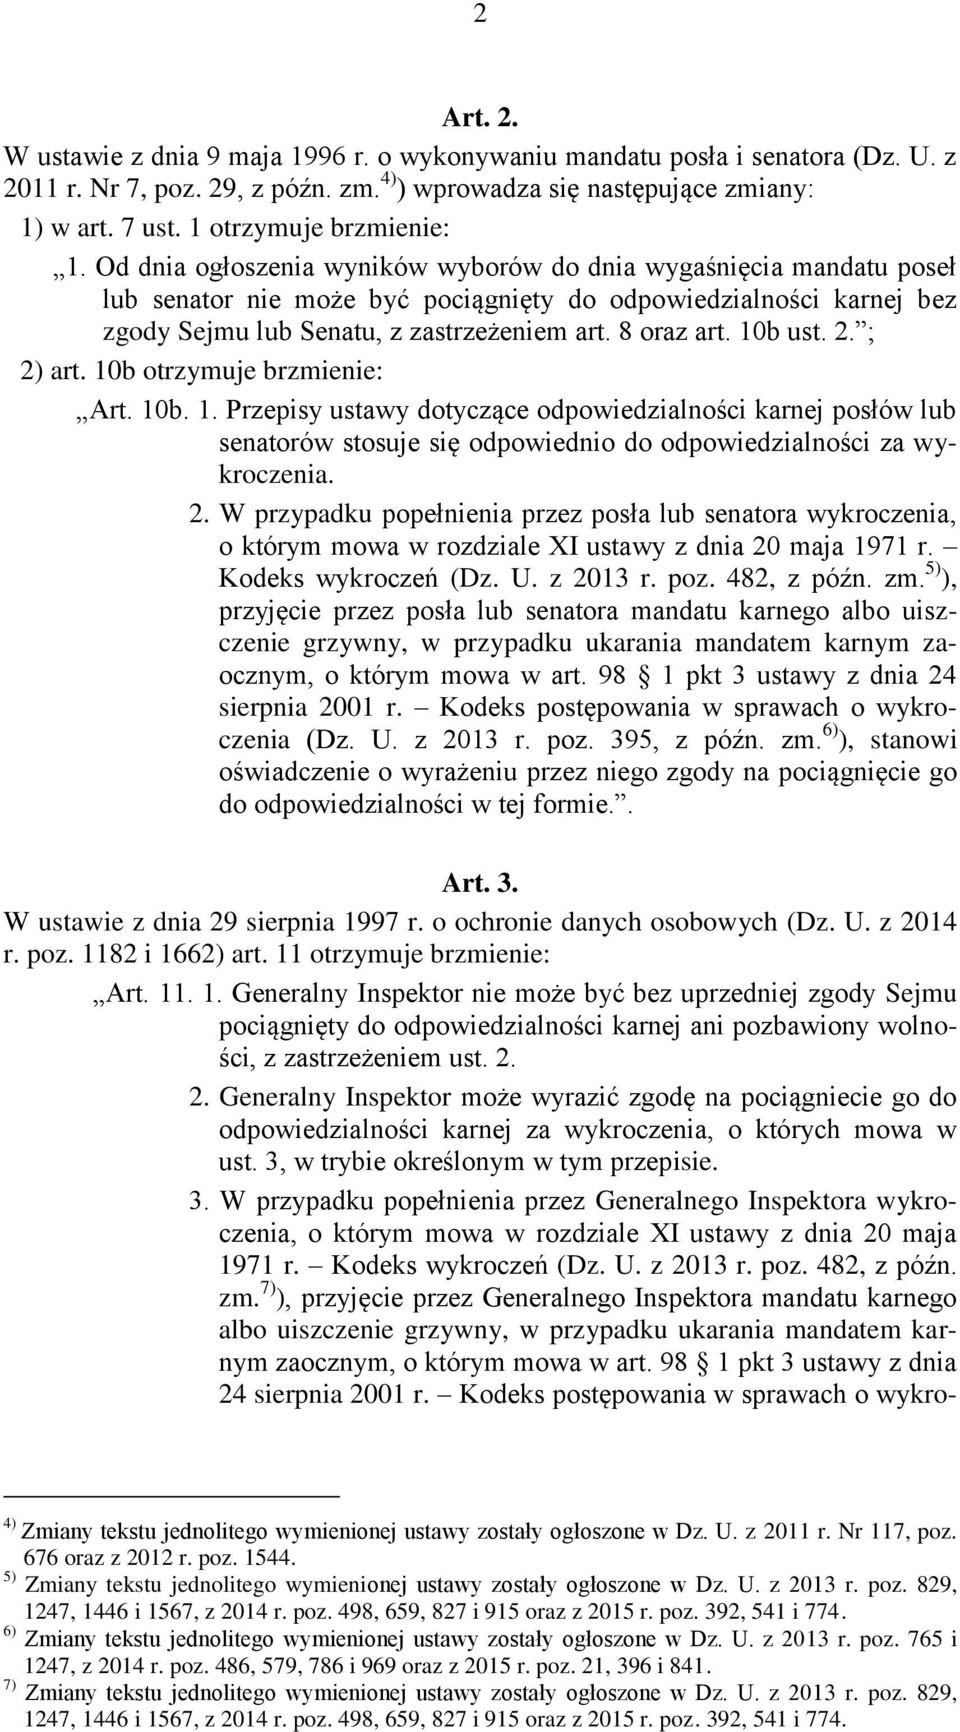 Od dnia ogłoszenia wyników wyborów do dnia wygaśnięcia mandatu poseł lub senator nie może być pociągnięty do odpowiedzialności karnej bez zgody Sejmu lub Senatu, z zastrzeżeniem art. 8 oraz art.